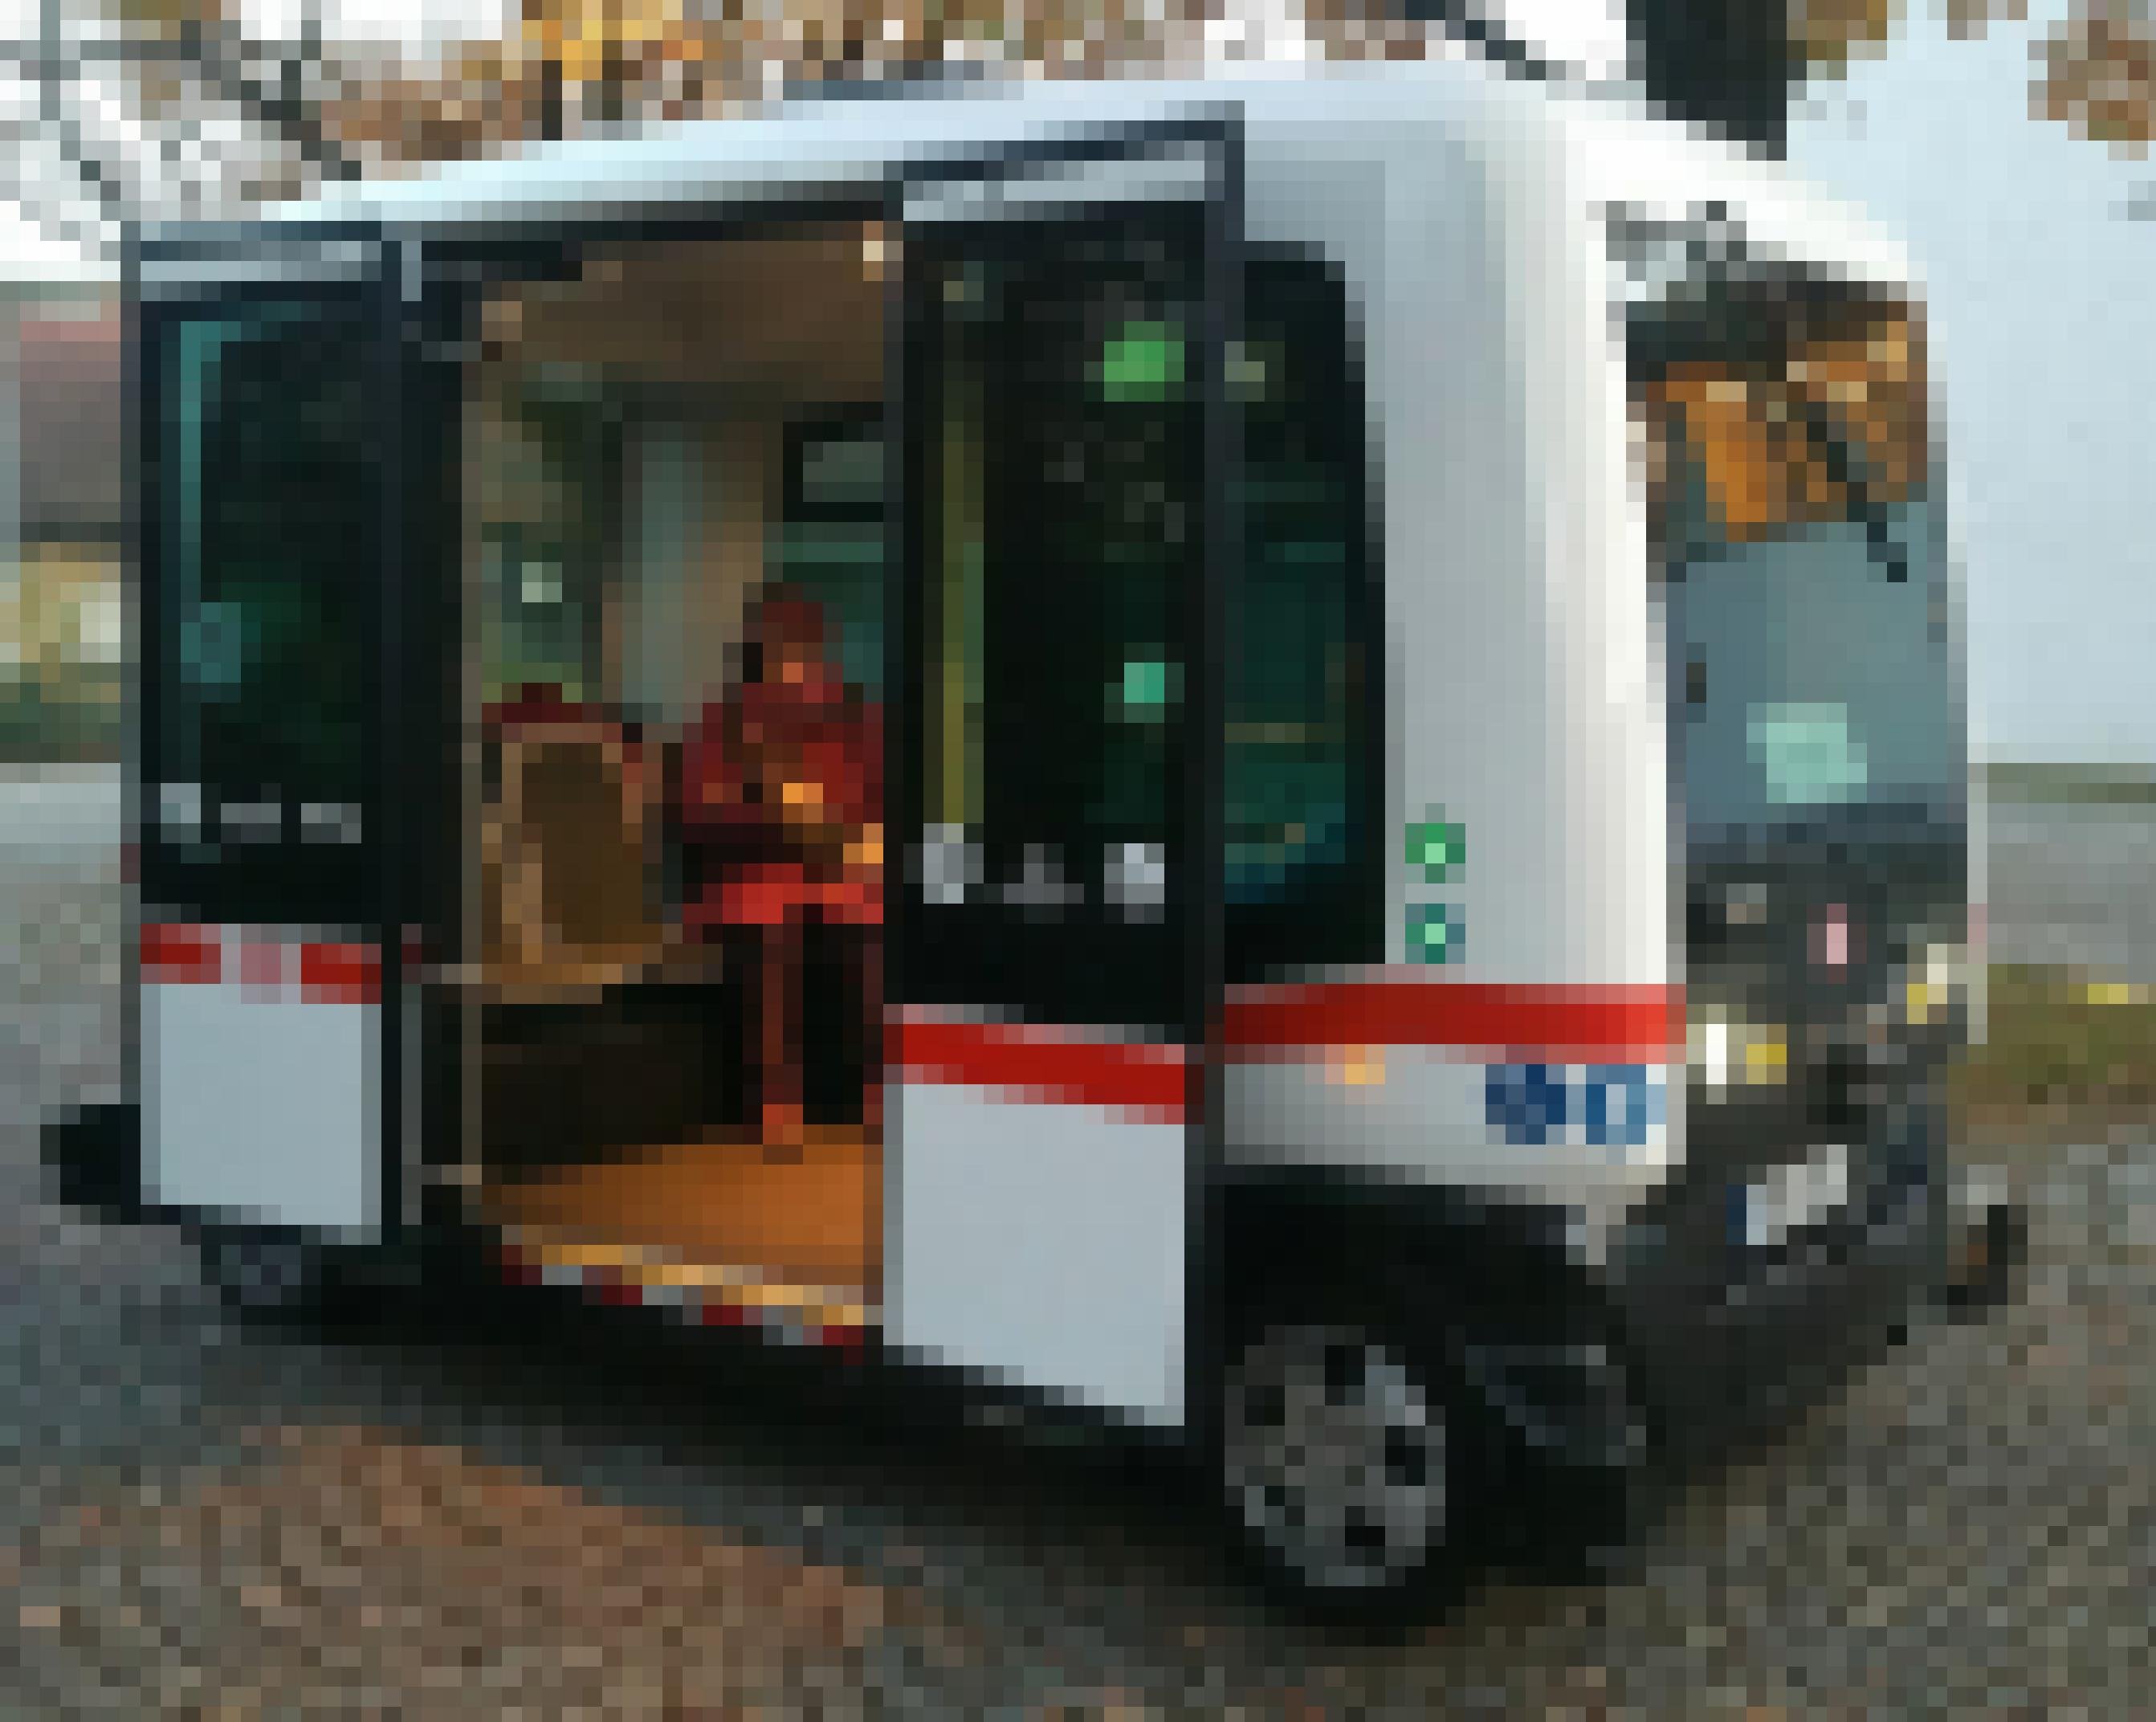 Autonomer Bus, hier in Bad Birnbach